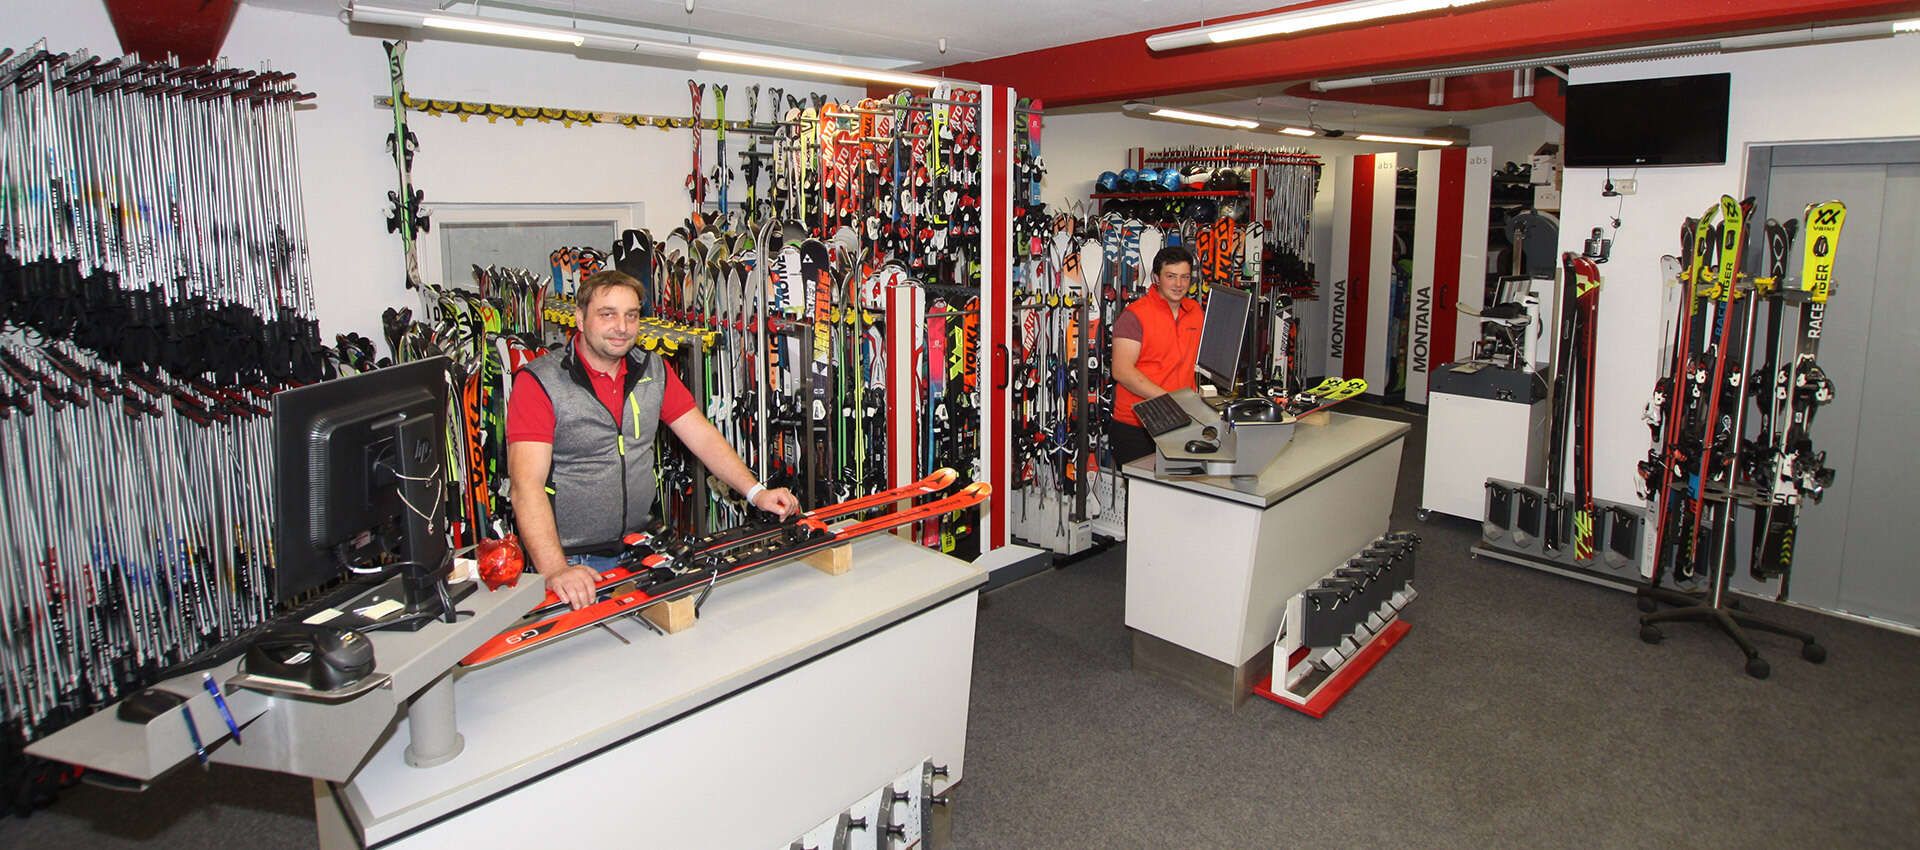 Ski- und Snowboard-Verleih im Sportshop Krismer in Fiss